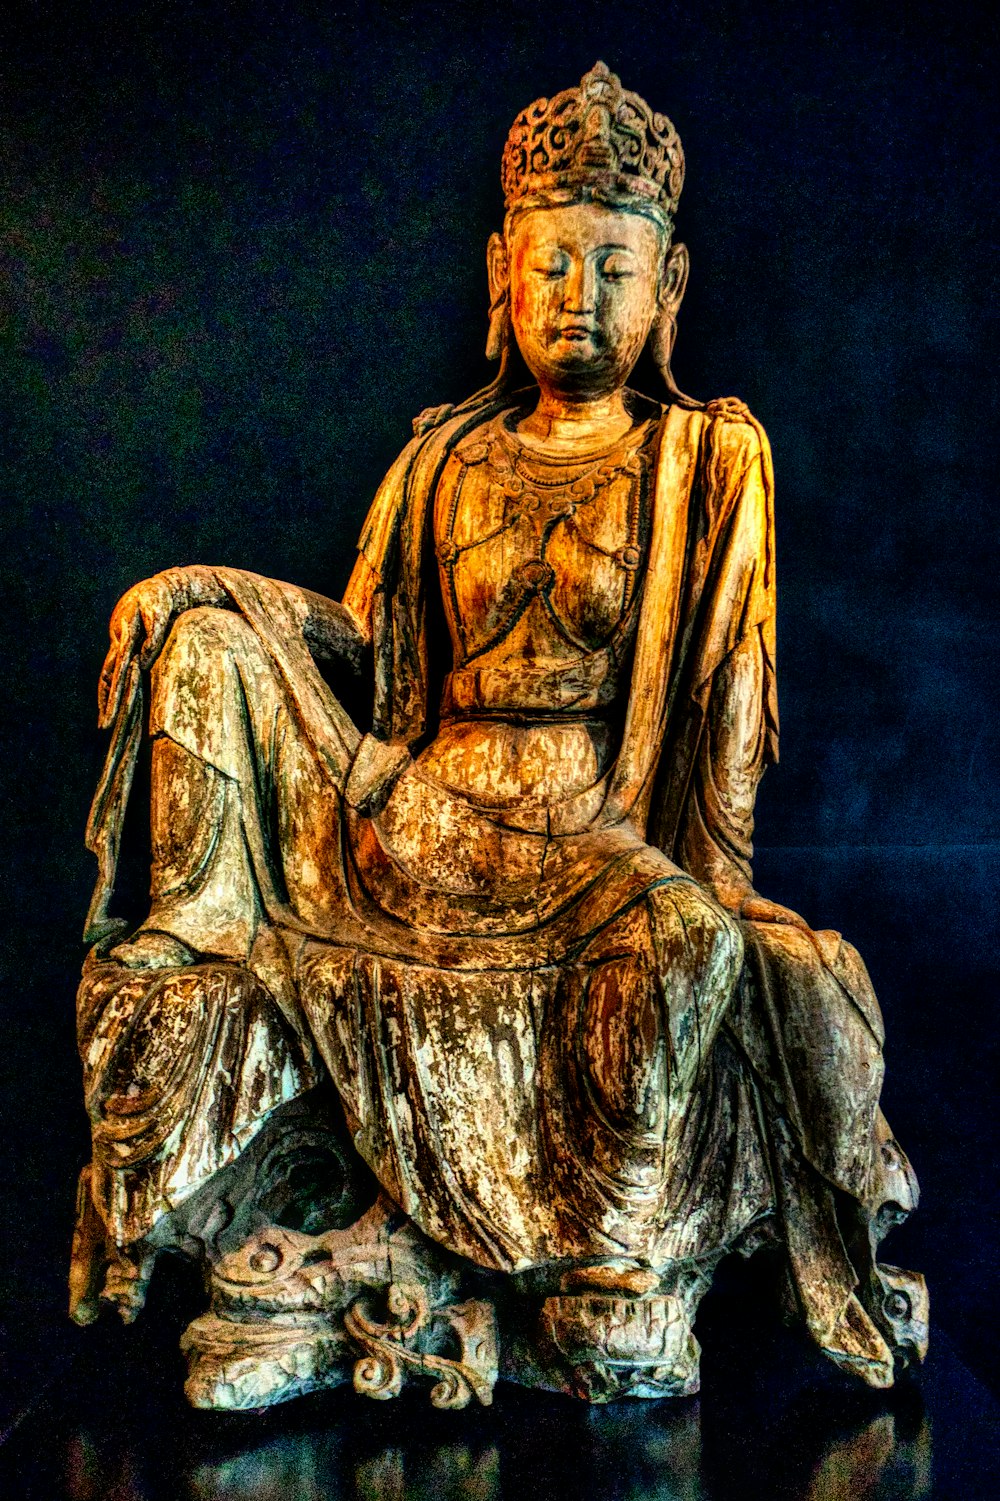 Une statue de Bouddha assise sur une table